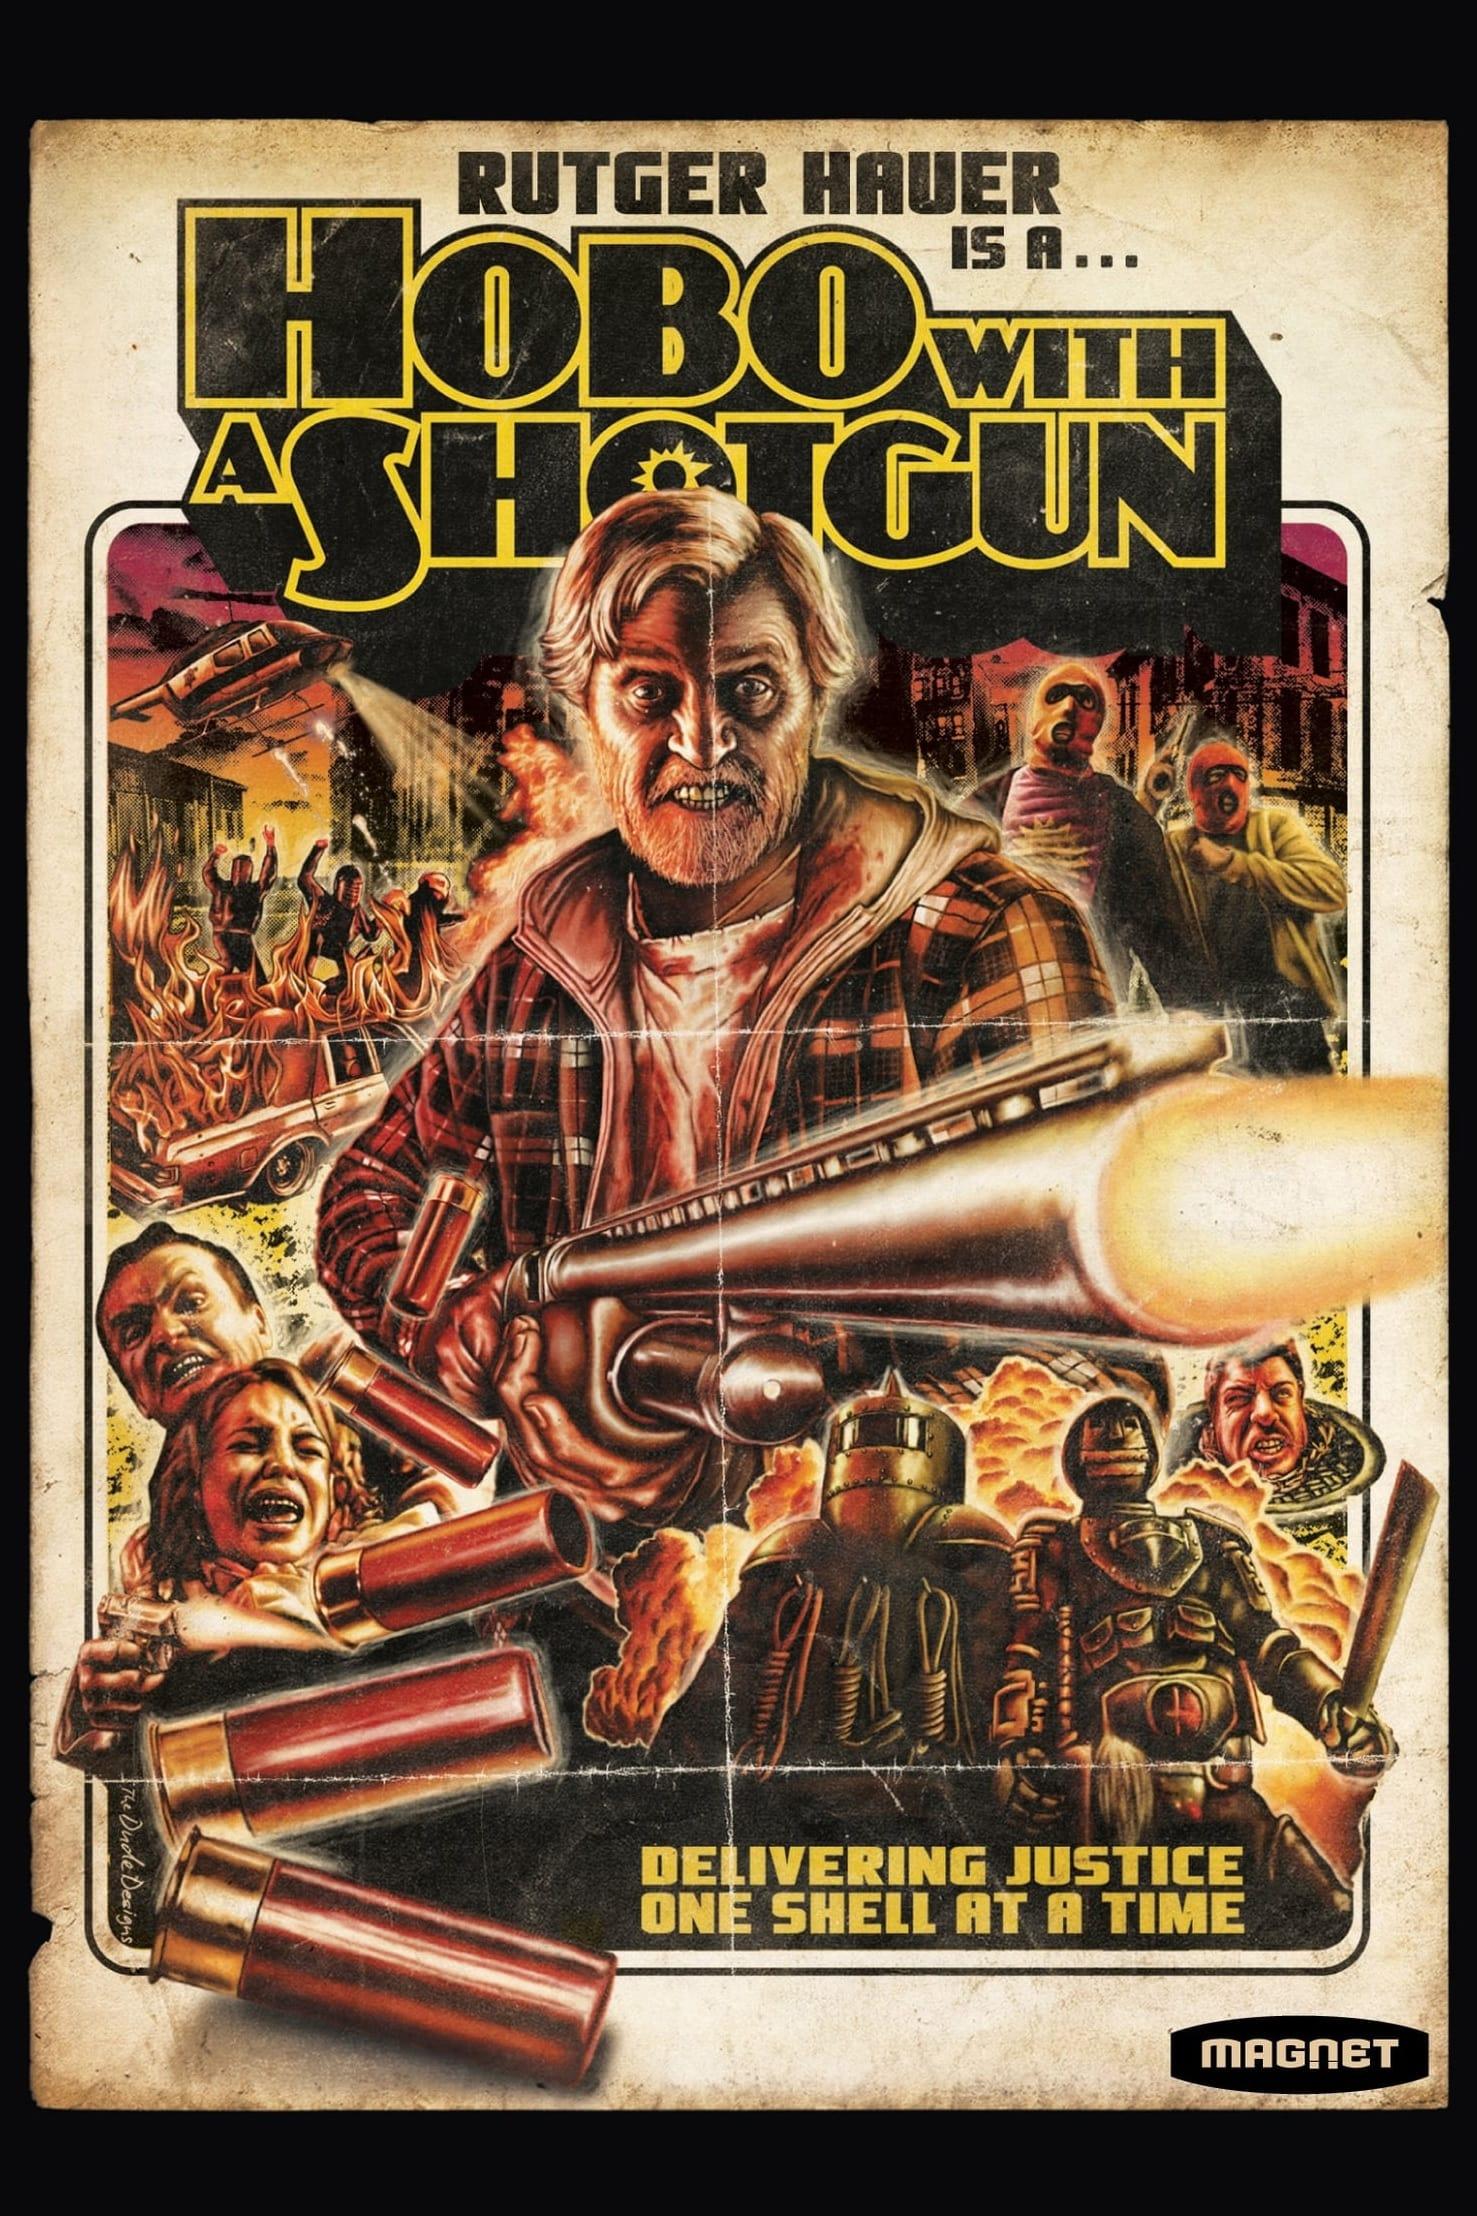 Hobo with a Shotgun poster